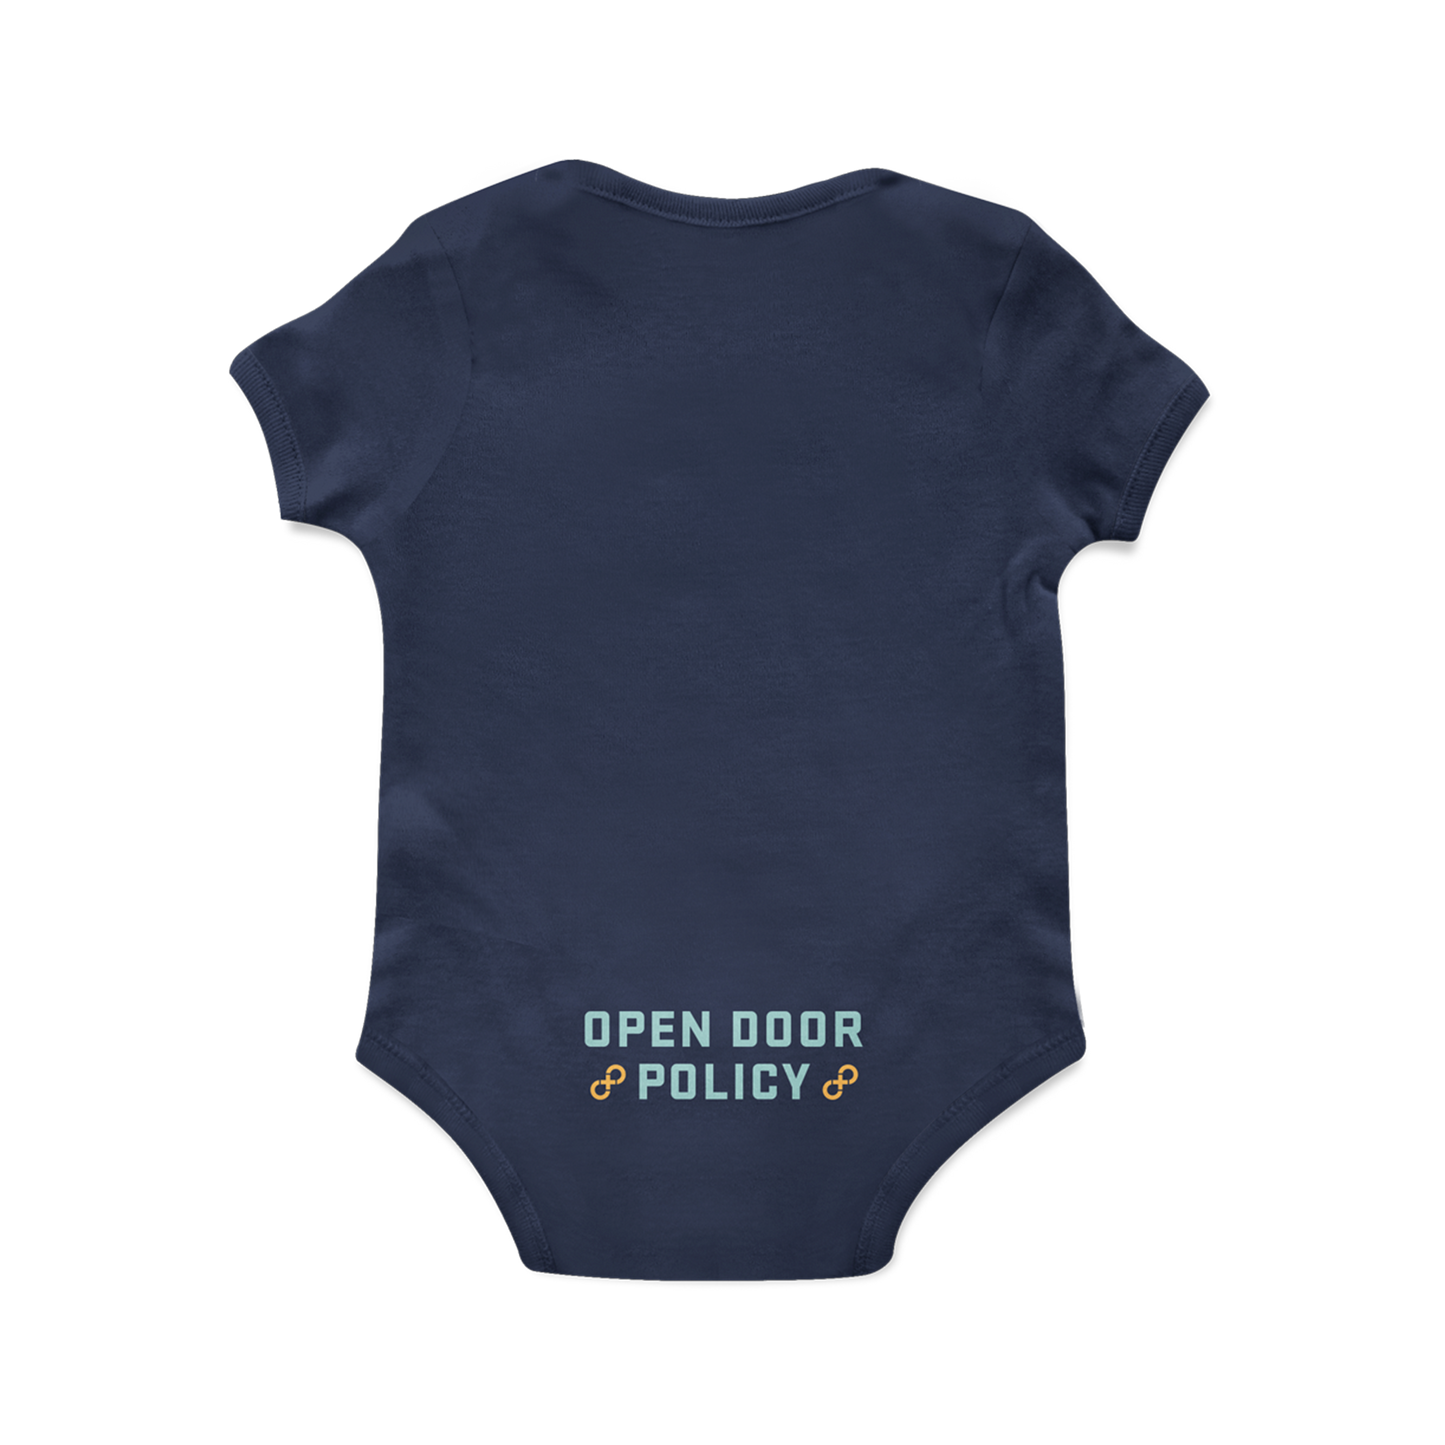 Open Door Policy 'Bunny' Baby Onesie